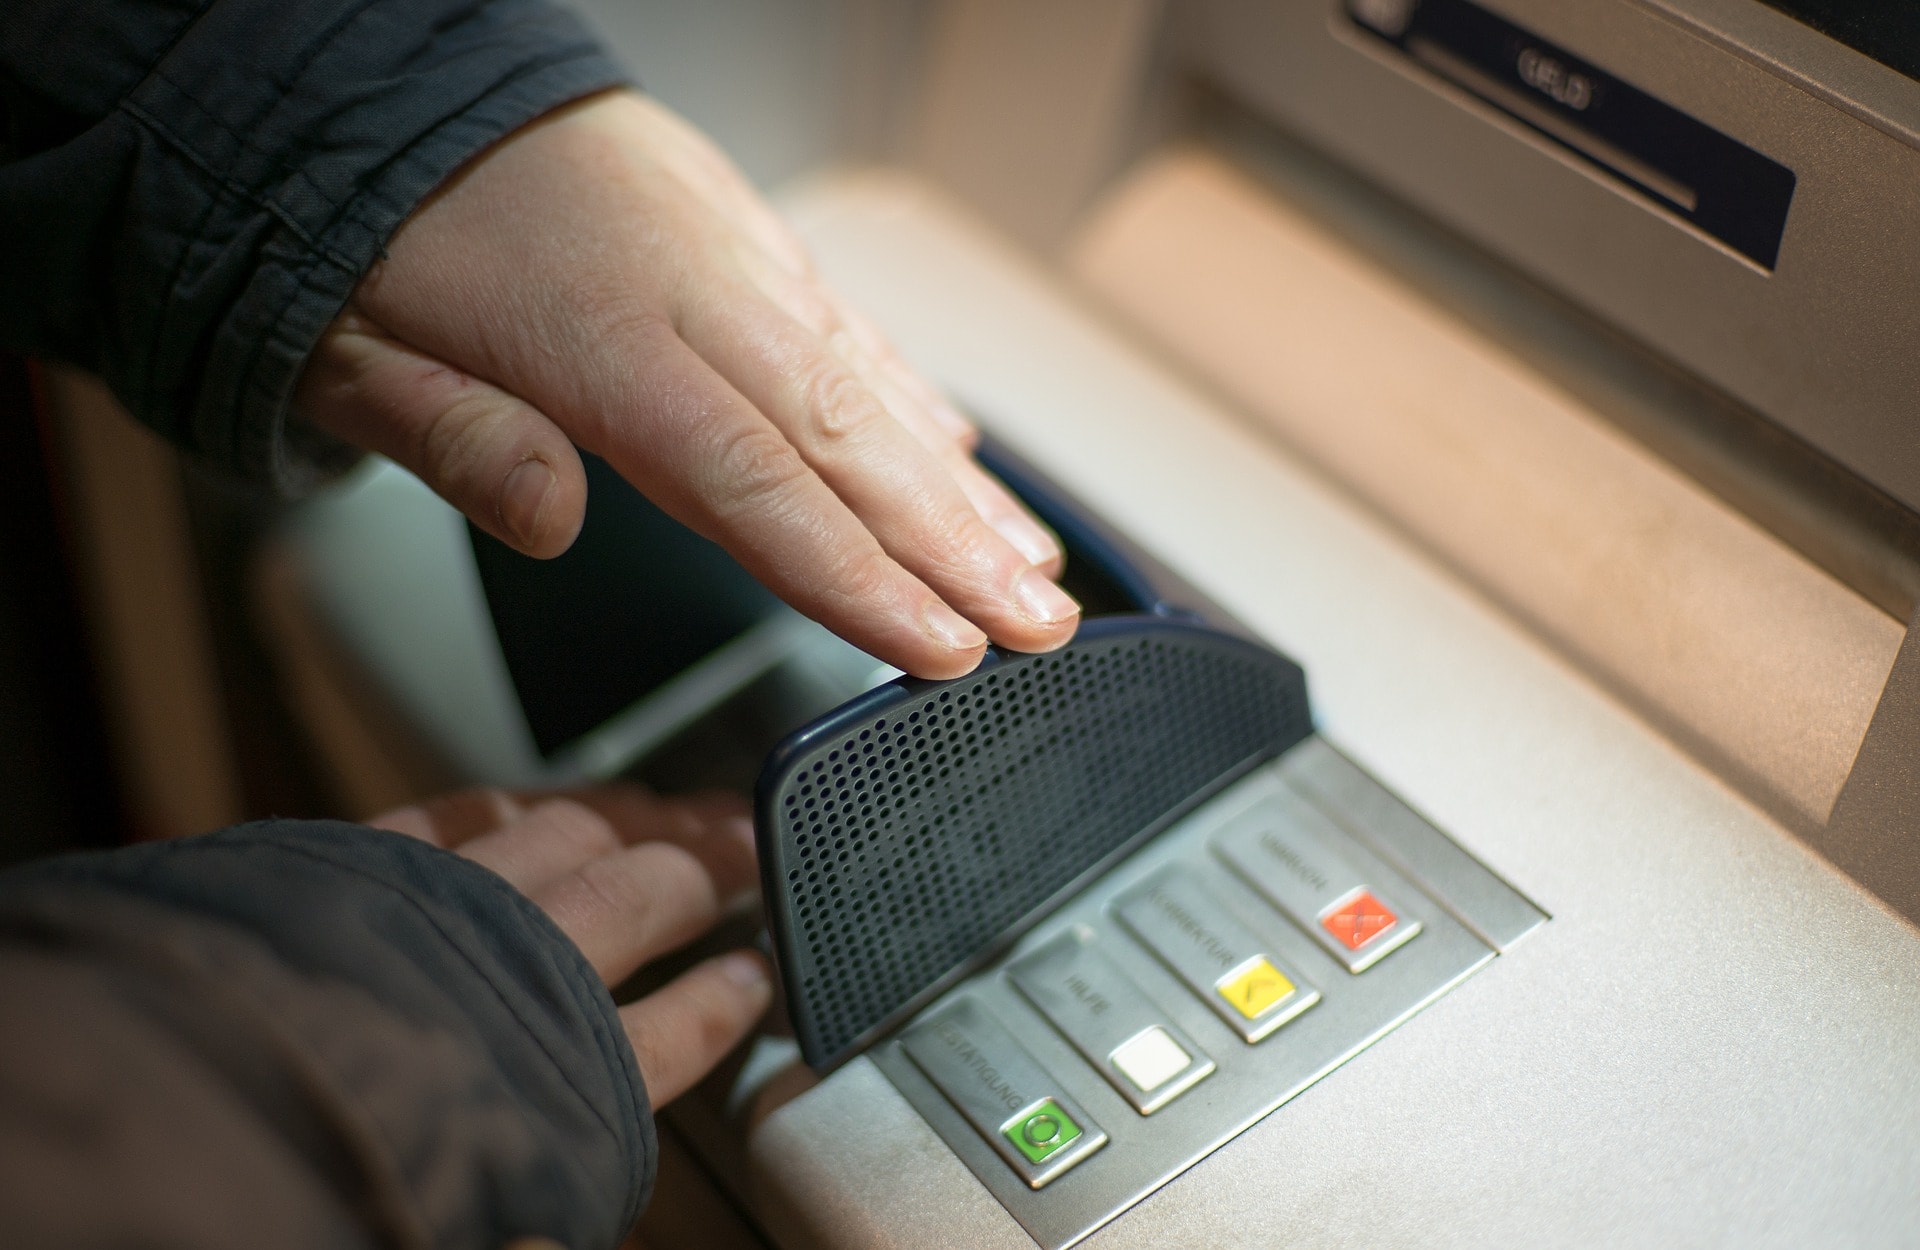 Chuyển tiền ATM khác ngân hàng cực đơn giản nếu bạn biết những lưu ý đáng tiền sau - Ảnh 3.